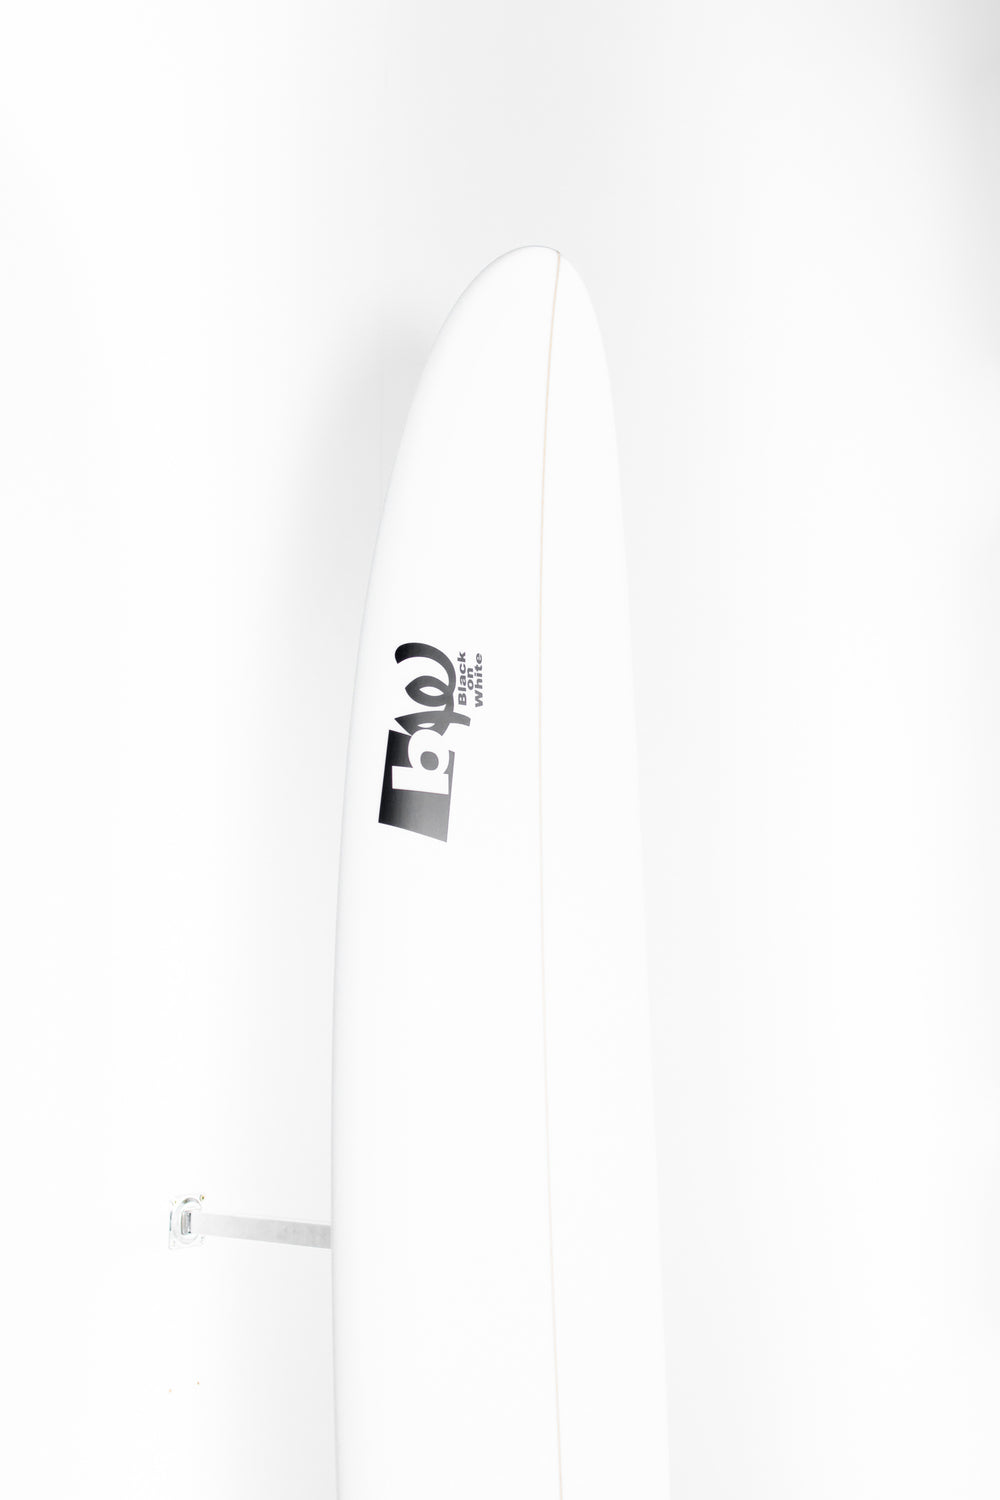 待望の再入荷! SOLID SURFBORDS 7.6 | www.mosquitec.com.br